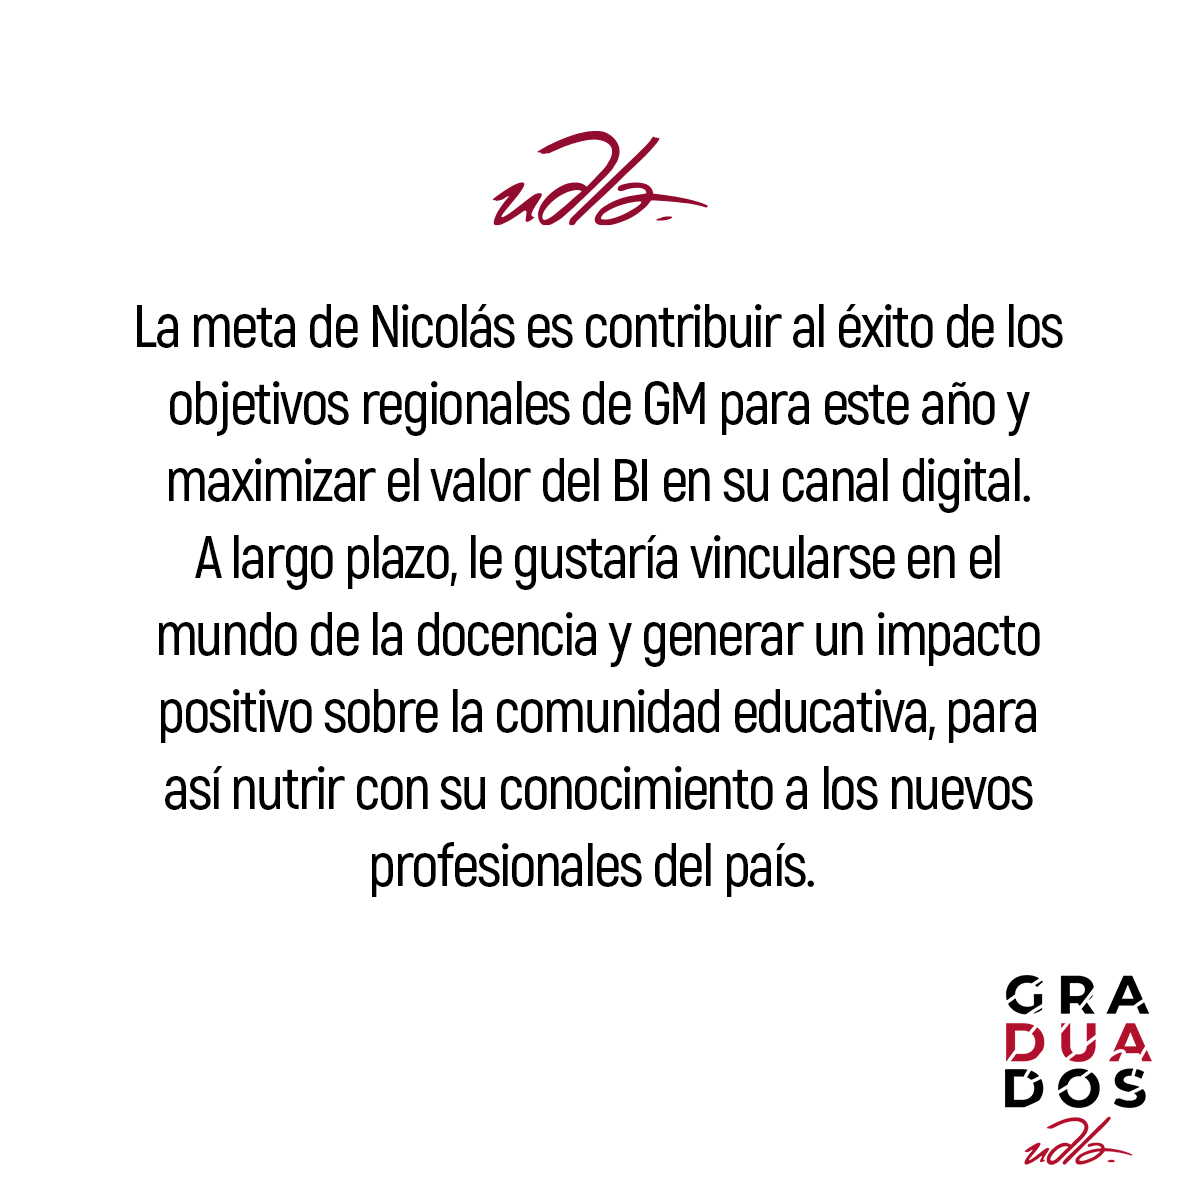 UDLA_Graduados_Destacados_Nicolás Araque_4